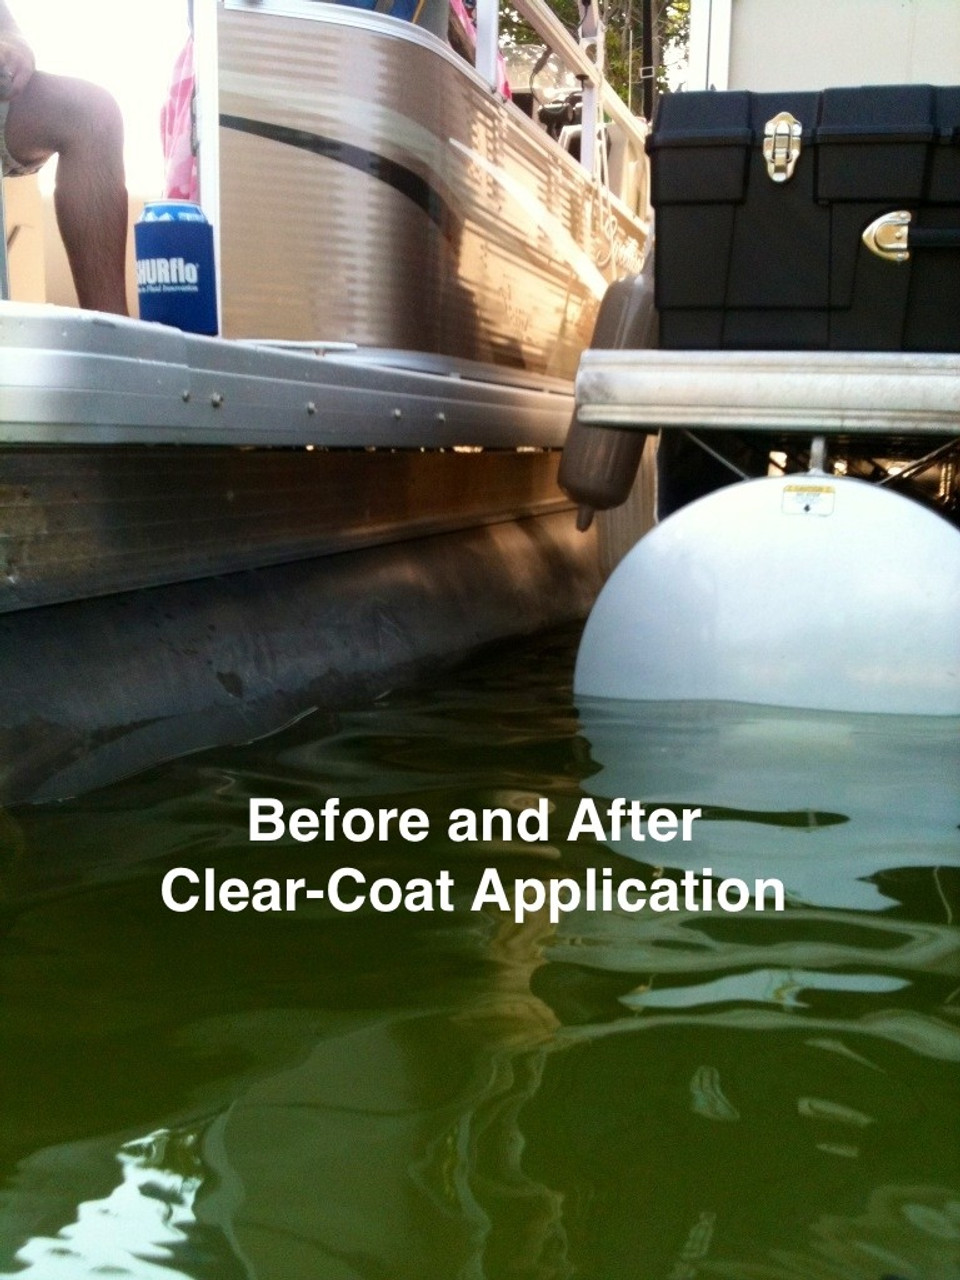 Ultimate Aluminum Cleaner & Restorer - Safely Clean Pontoon Boats